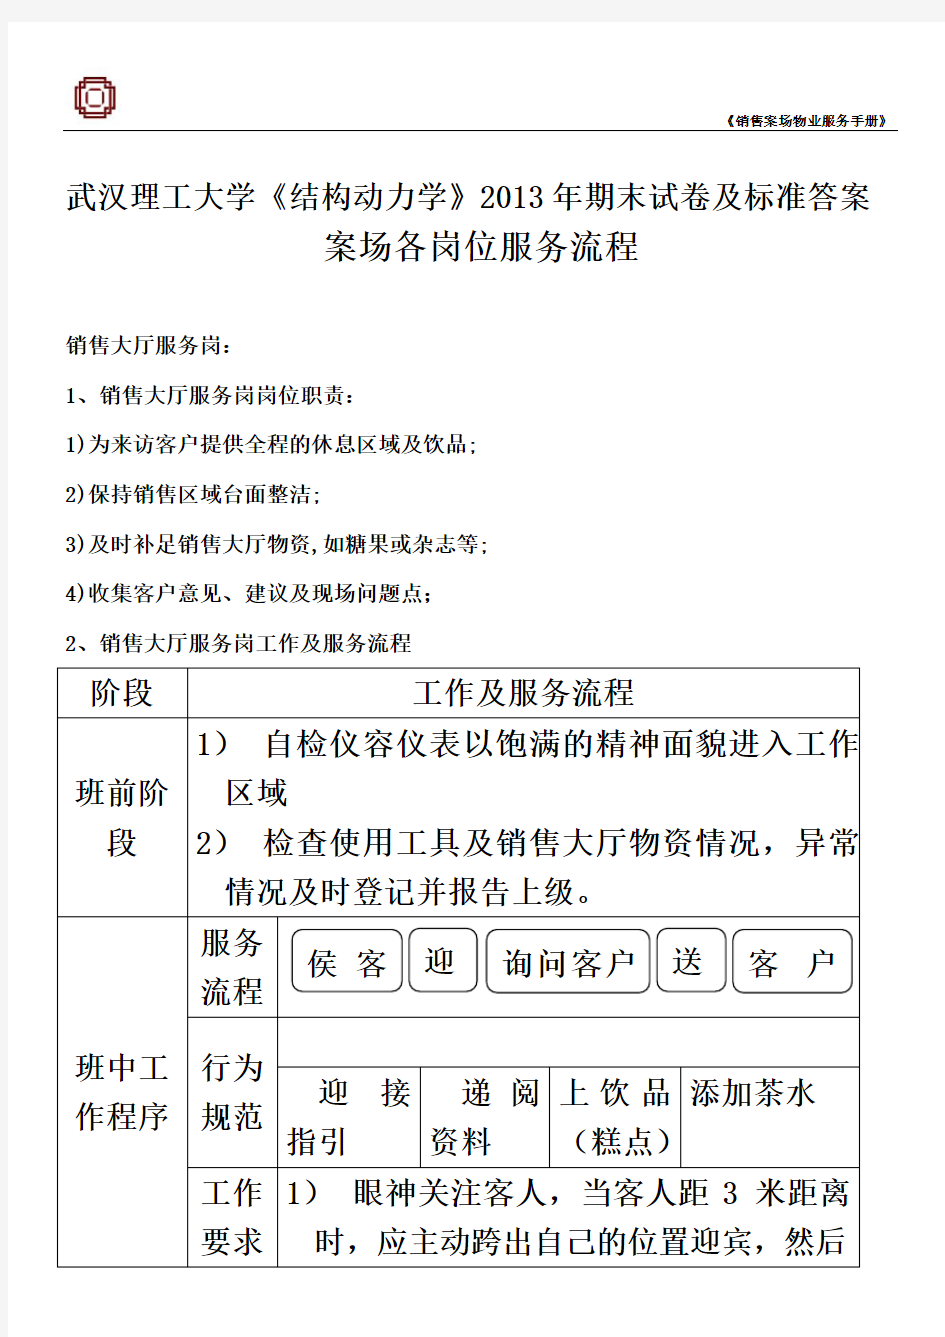 武汉理工大学《结构动力学》2013年期末试卷及标准答案